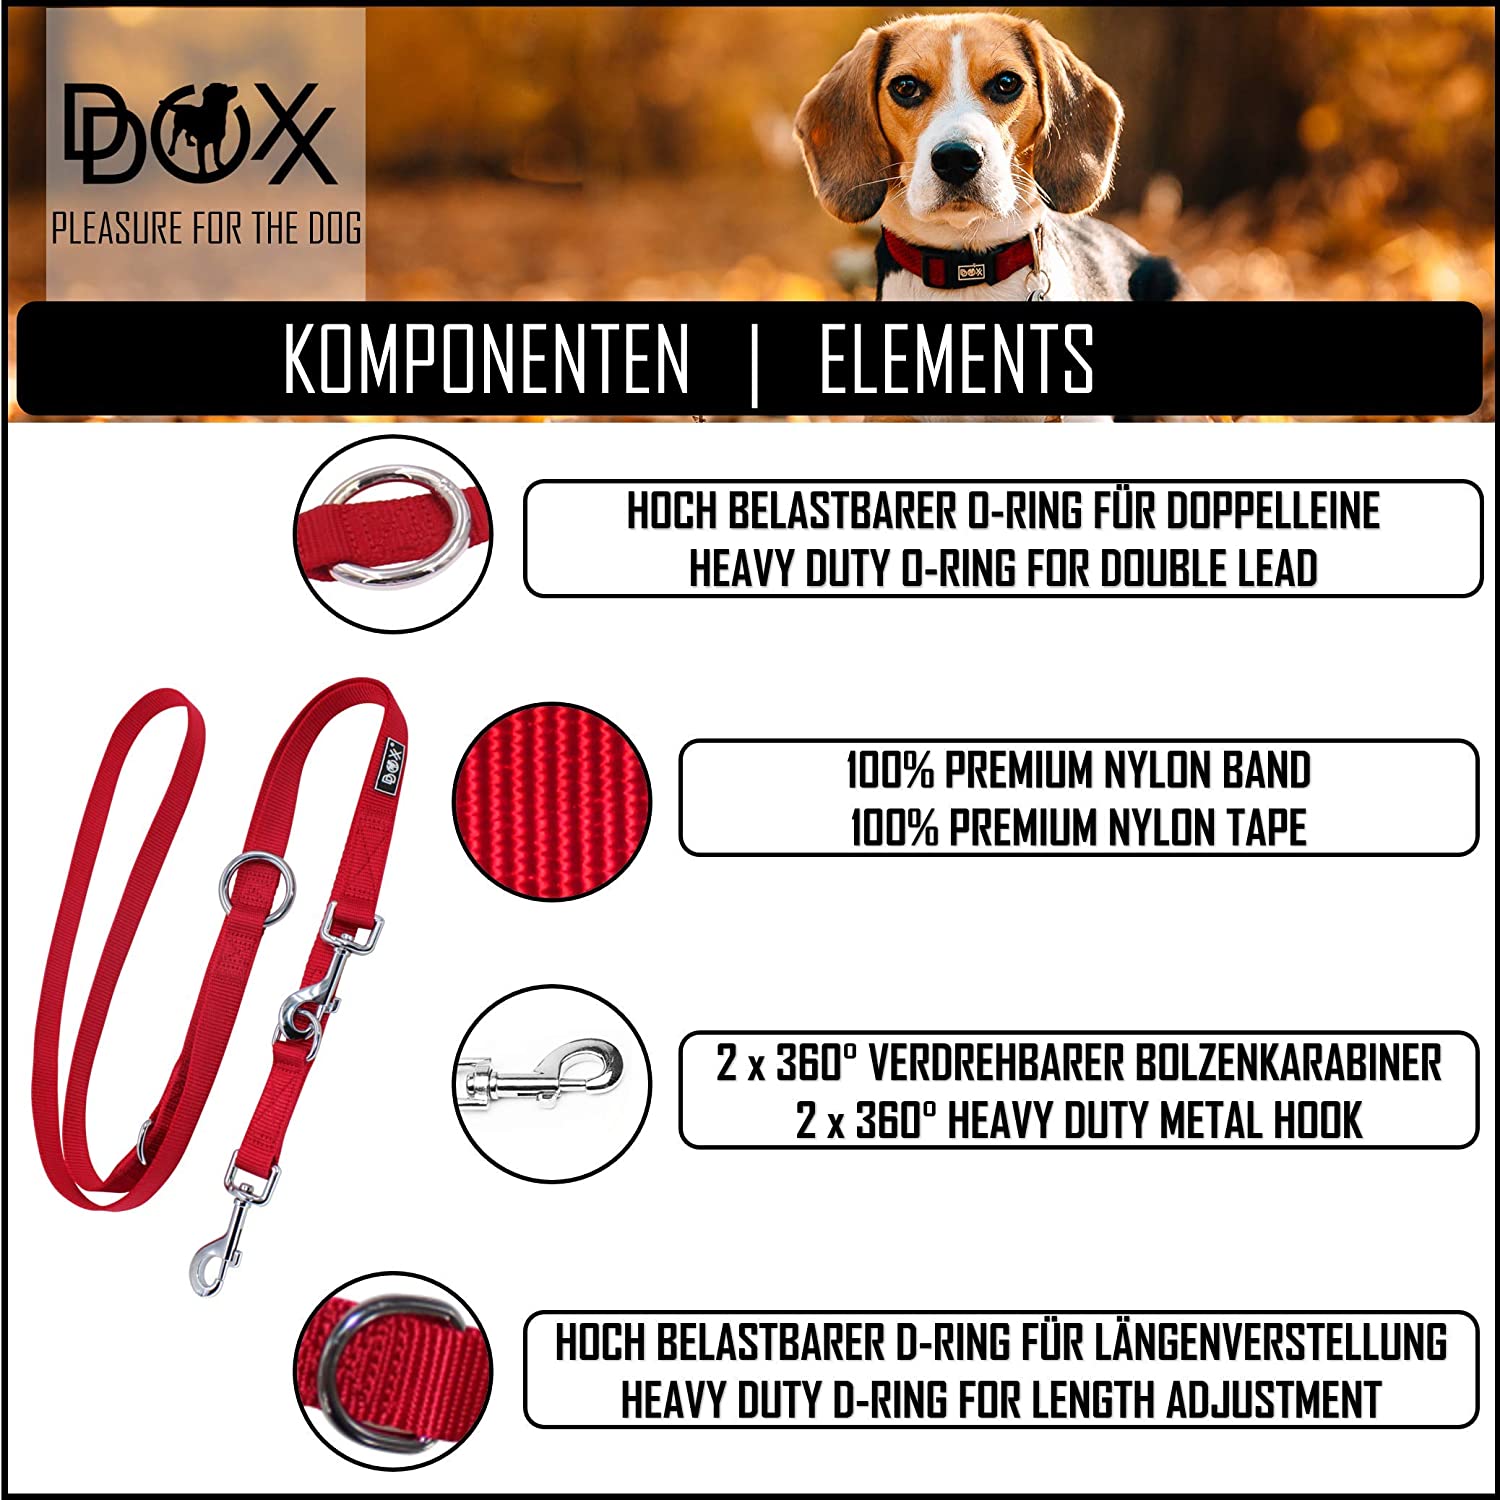  DDOXX Correa Perro Multiposición Nylon, Ajustable en 3 tamaños, 2 m | Diferentes Colores & Tamaños | para Perros Pequeño, Mediano y Grande | Correa Accesorios Doble 2 Gato Cachorro | S, Azul, 2m 